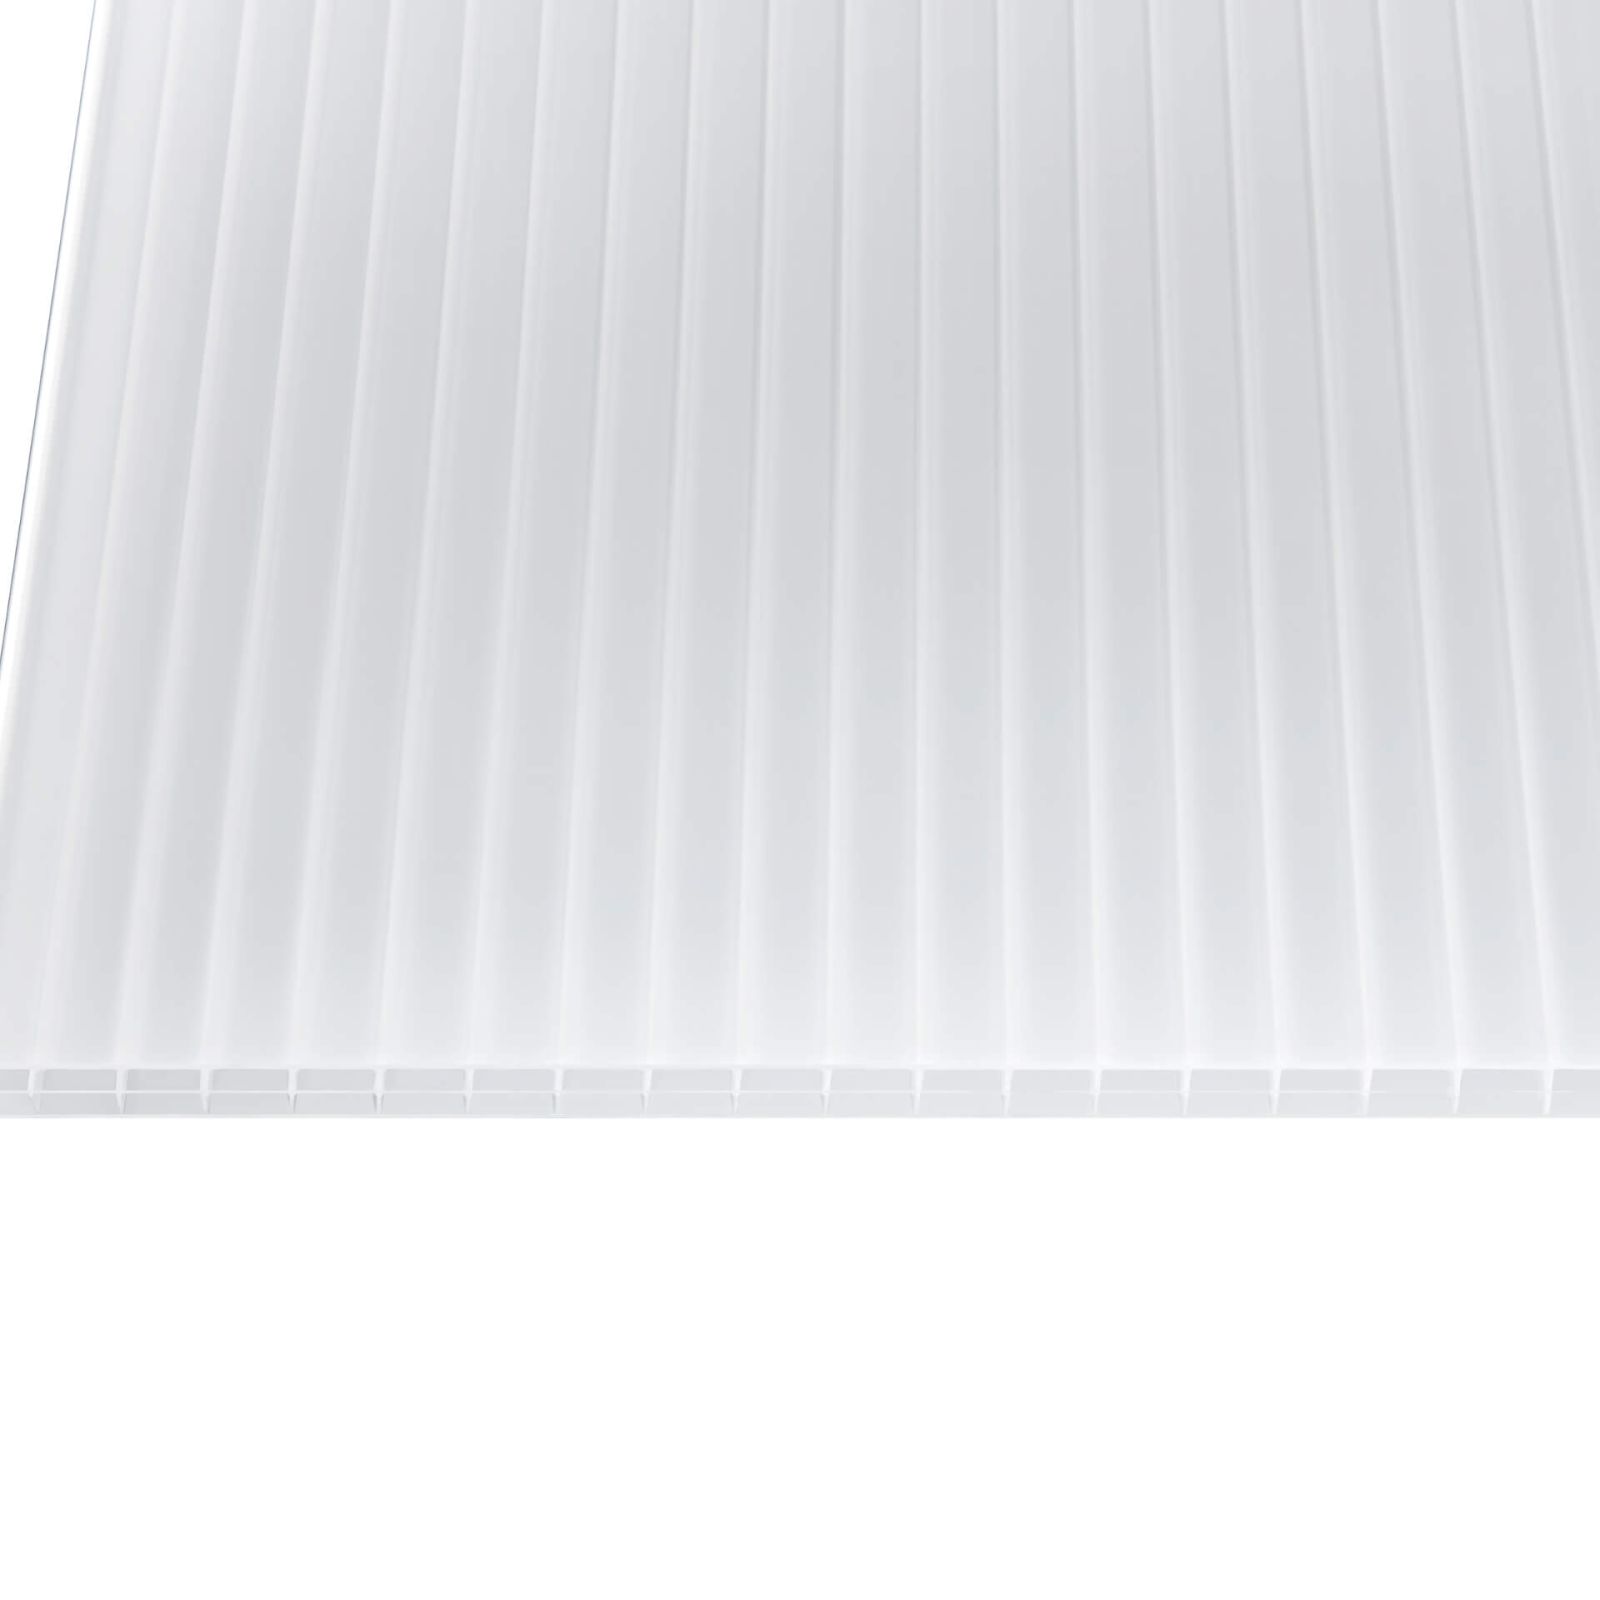 Polycarbonat Stegplatte | 16 mm | Breite 980 mm | Opal Weiß | Beidseitiger UV-Schutz | 2000 mm #4